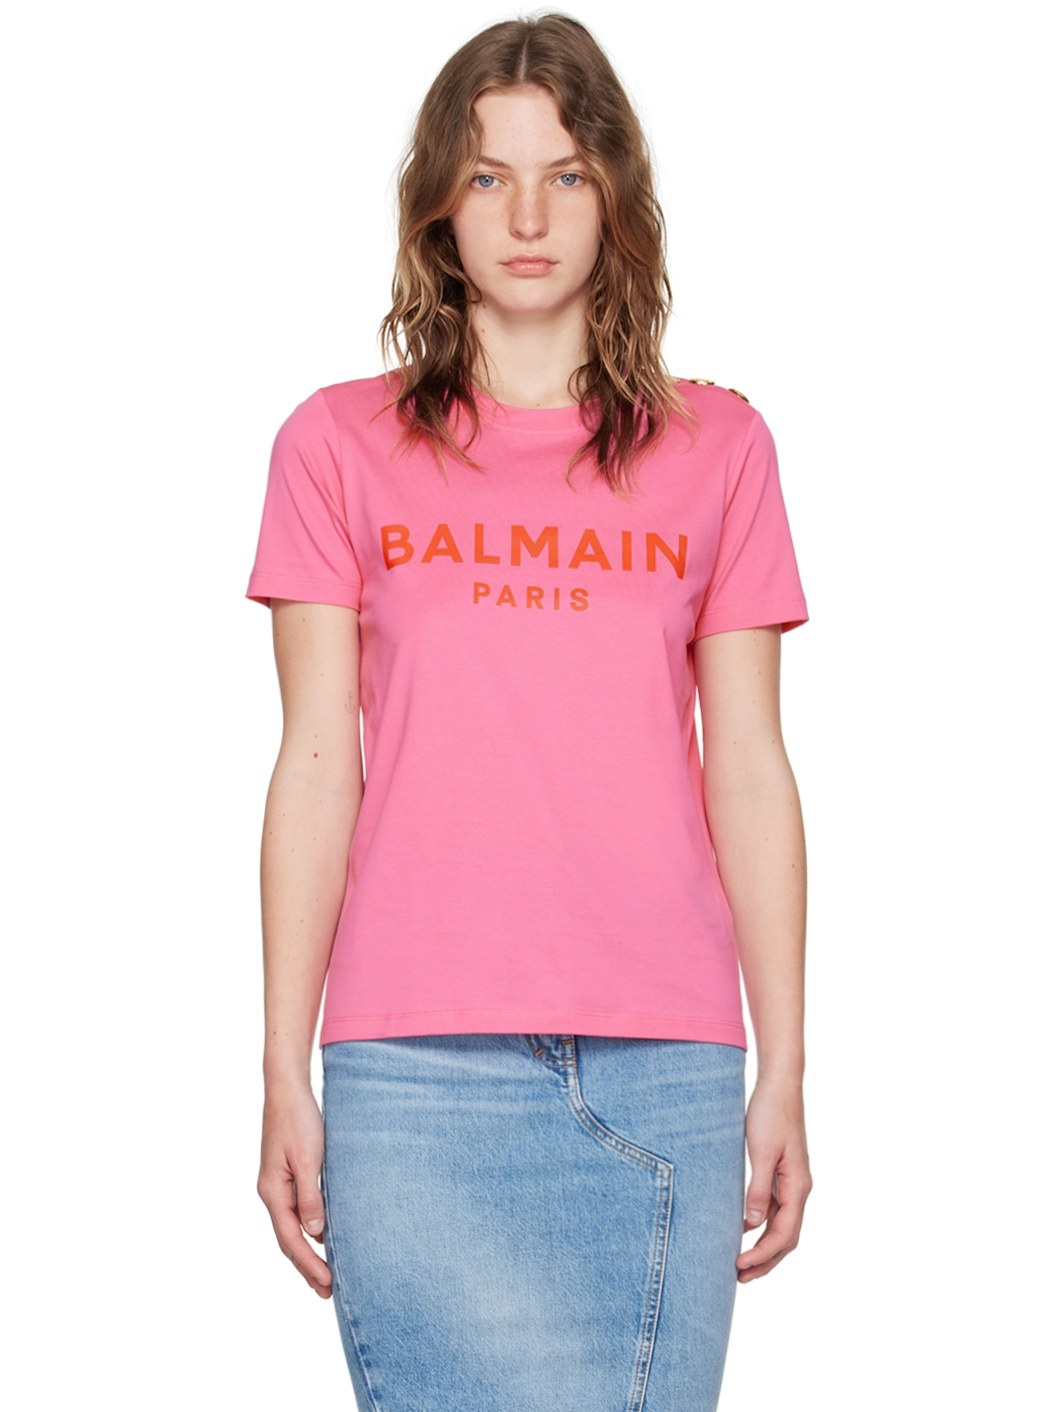 Pink 'Balmain Paris' T-Shirt - 1